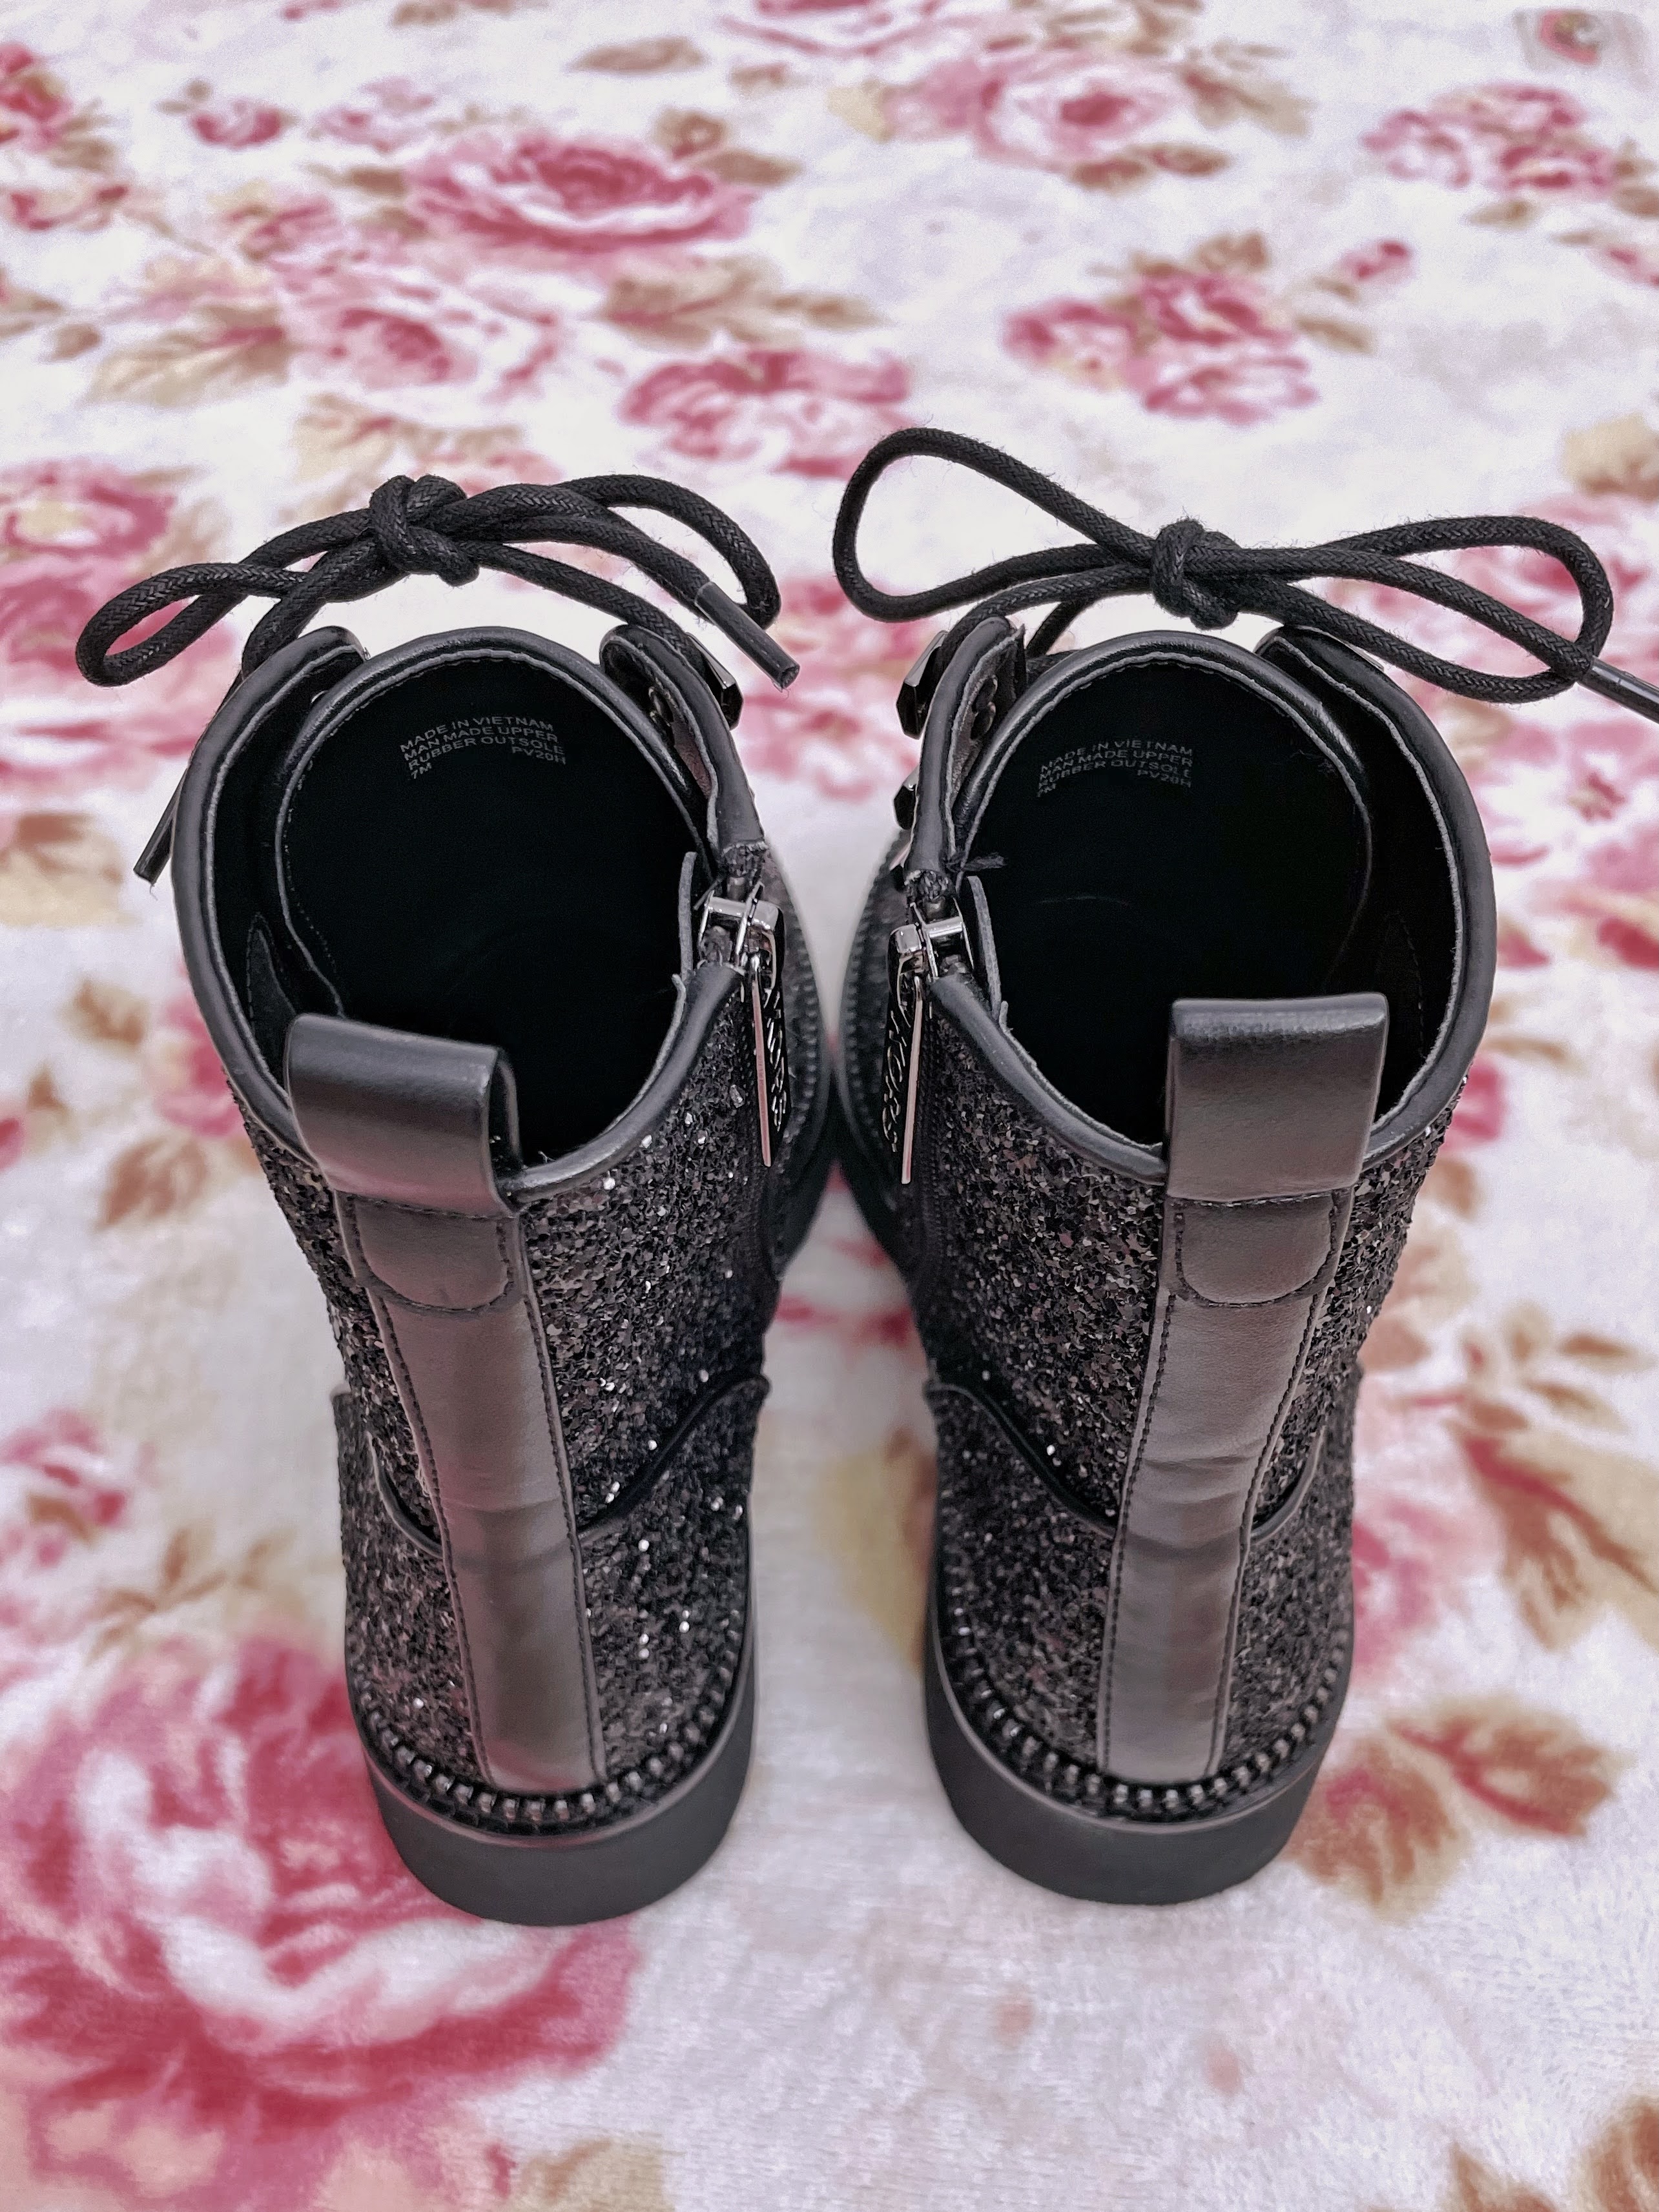 Emiiichan Blog ☆ : Michael Kors Haskell glitter combat boots vs Bensen cut  out combat boots